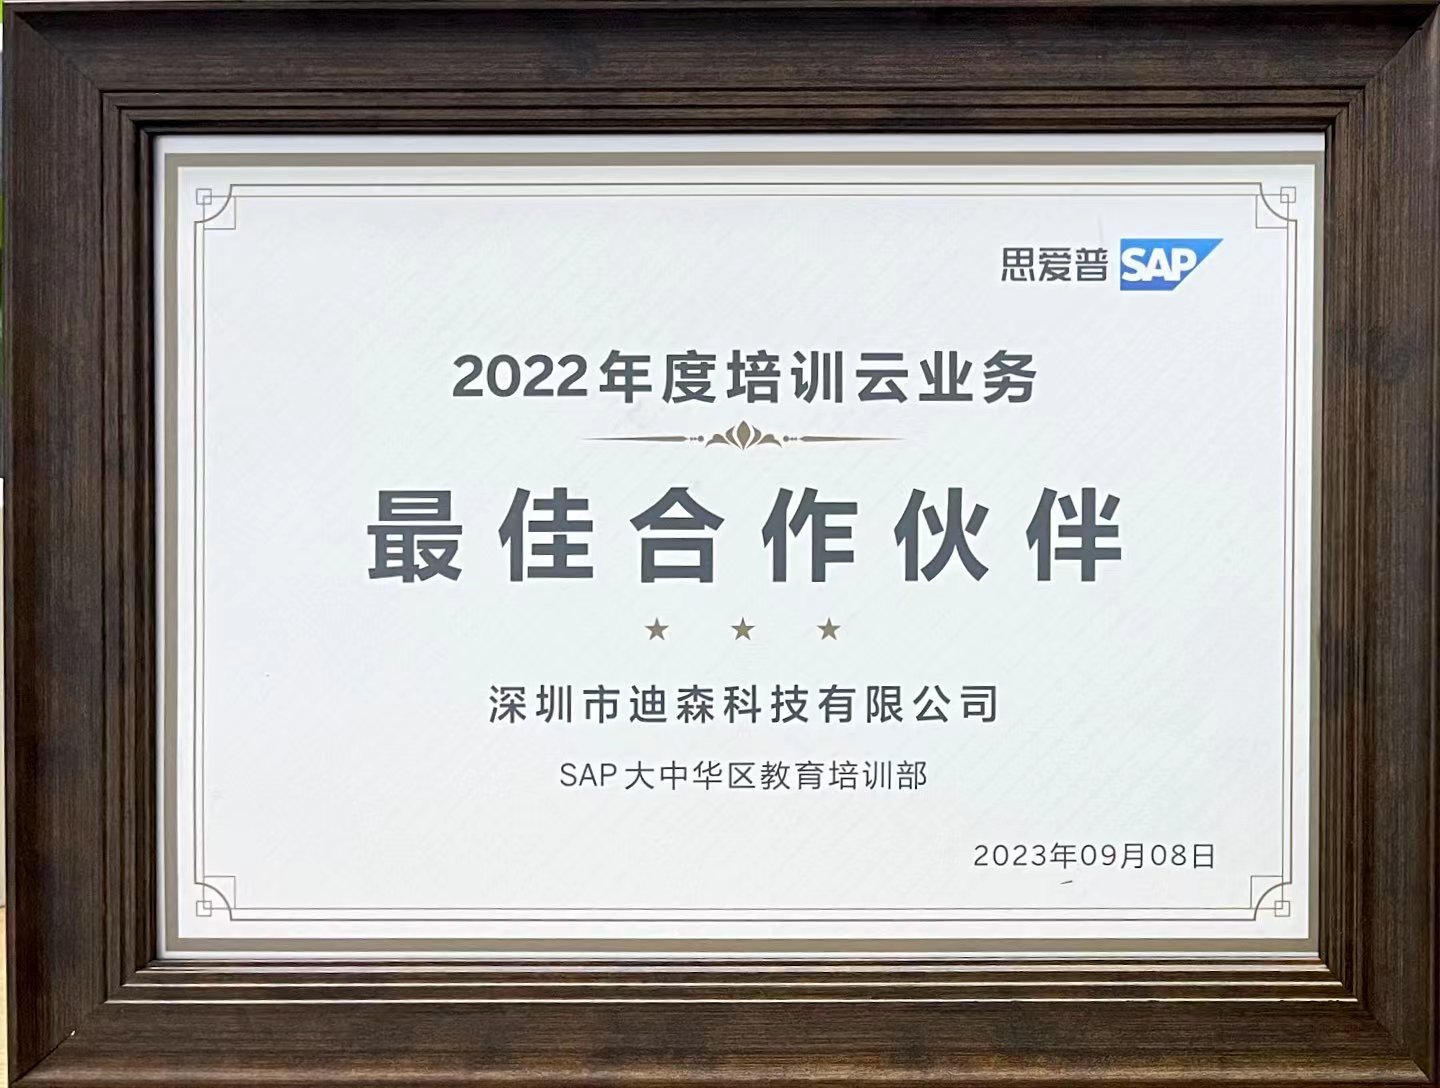 2023 SAP Best Partner